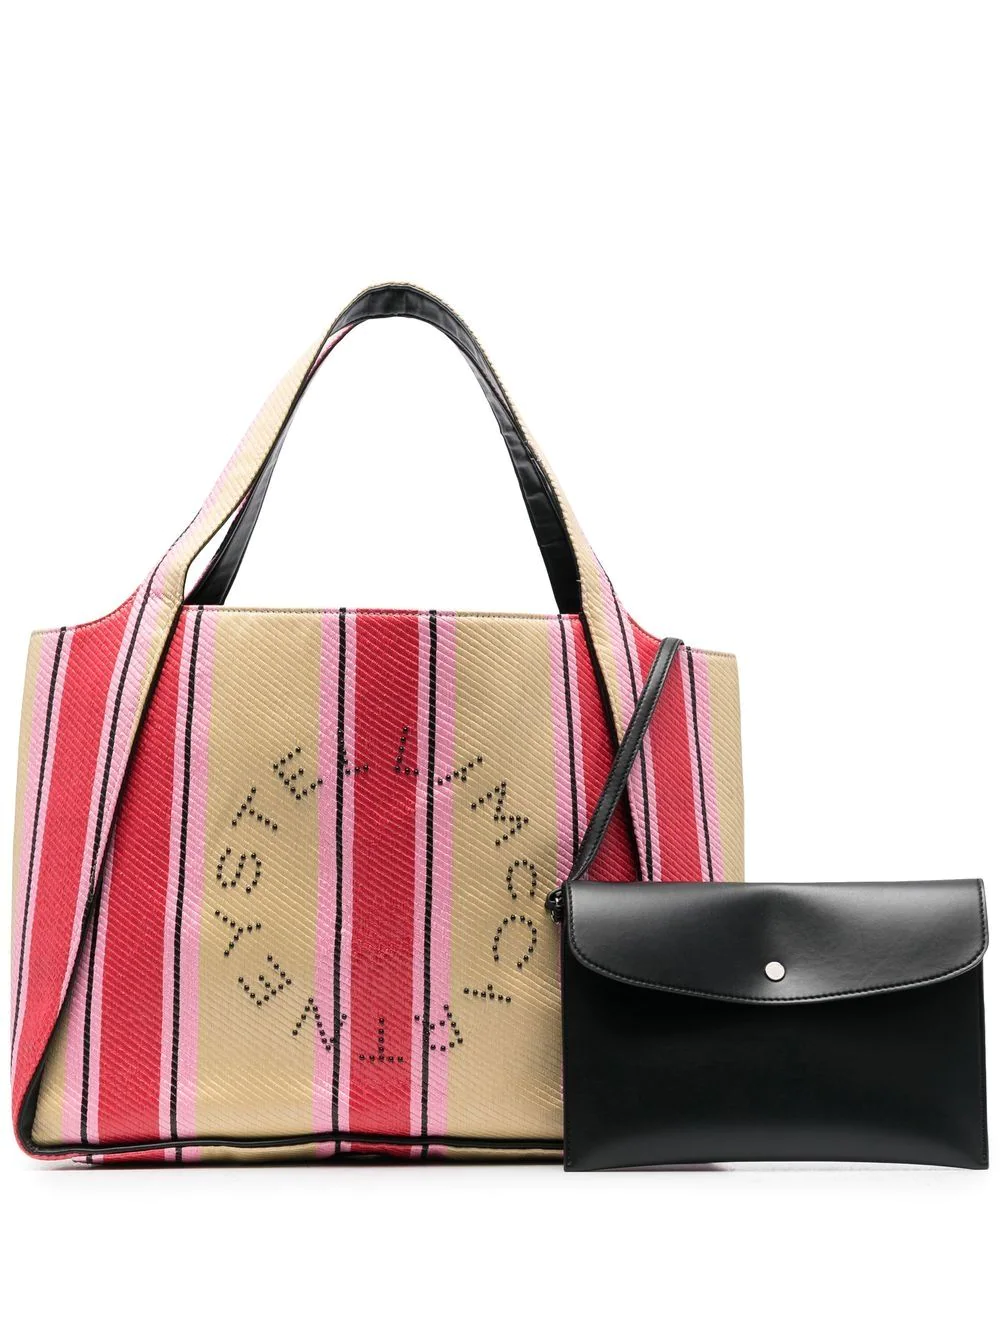 Stella Mccartney Striped Tote Bag In Multicolour